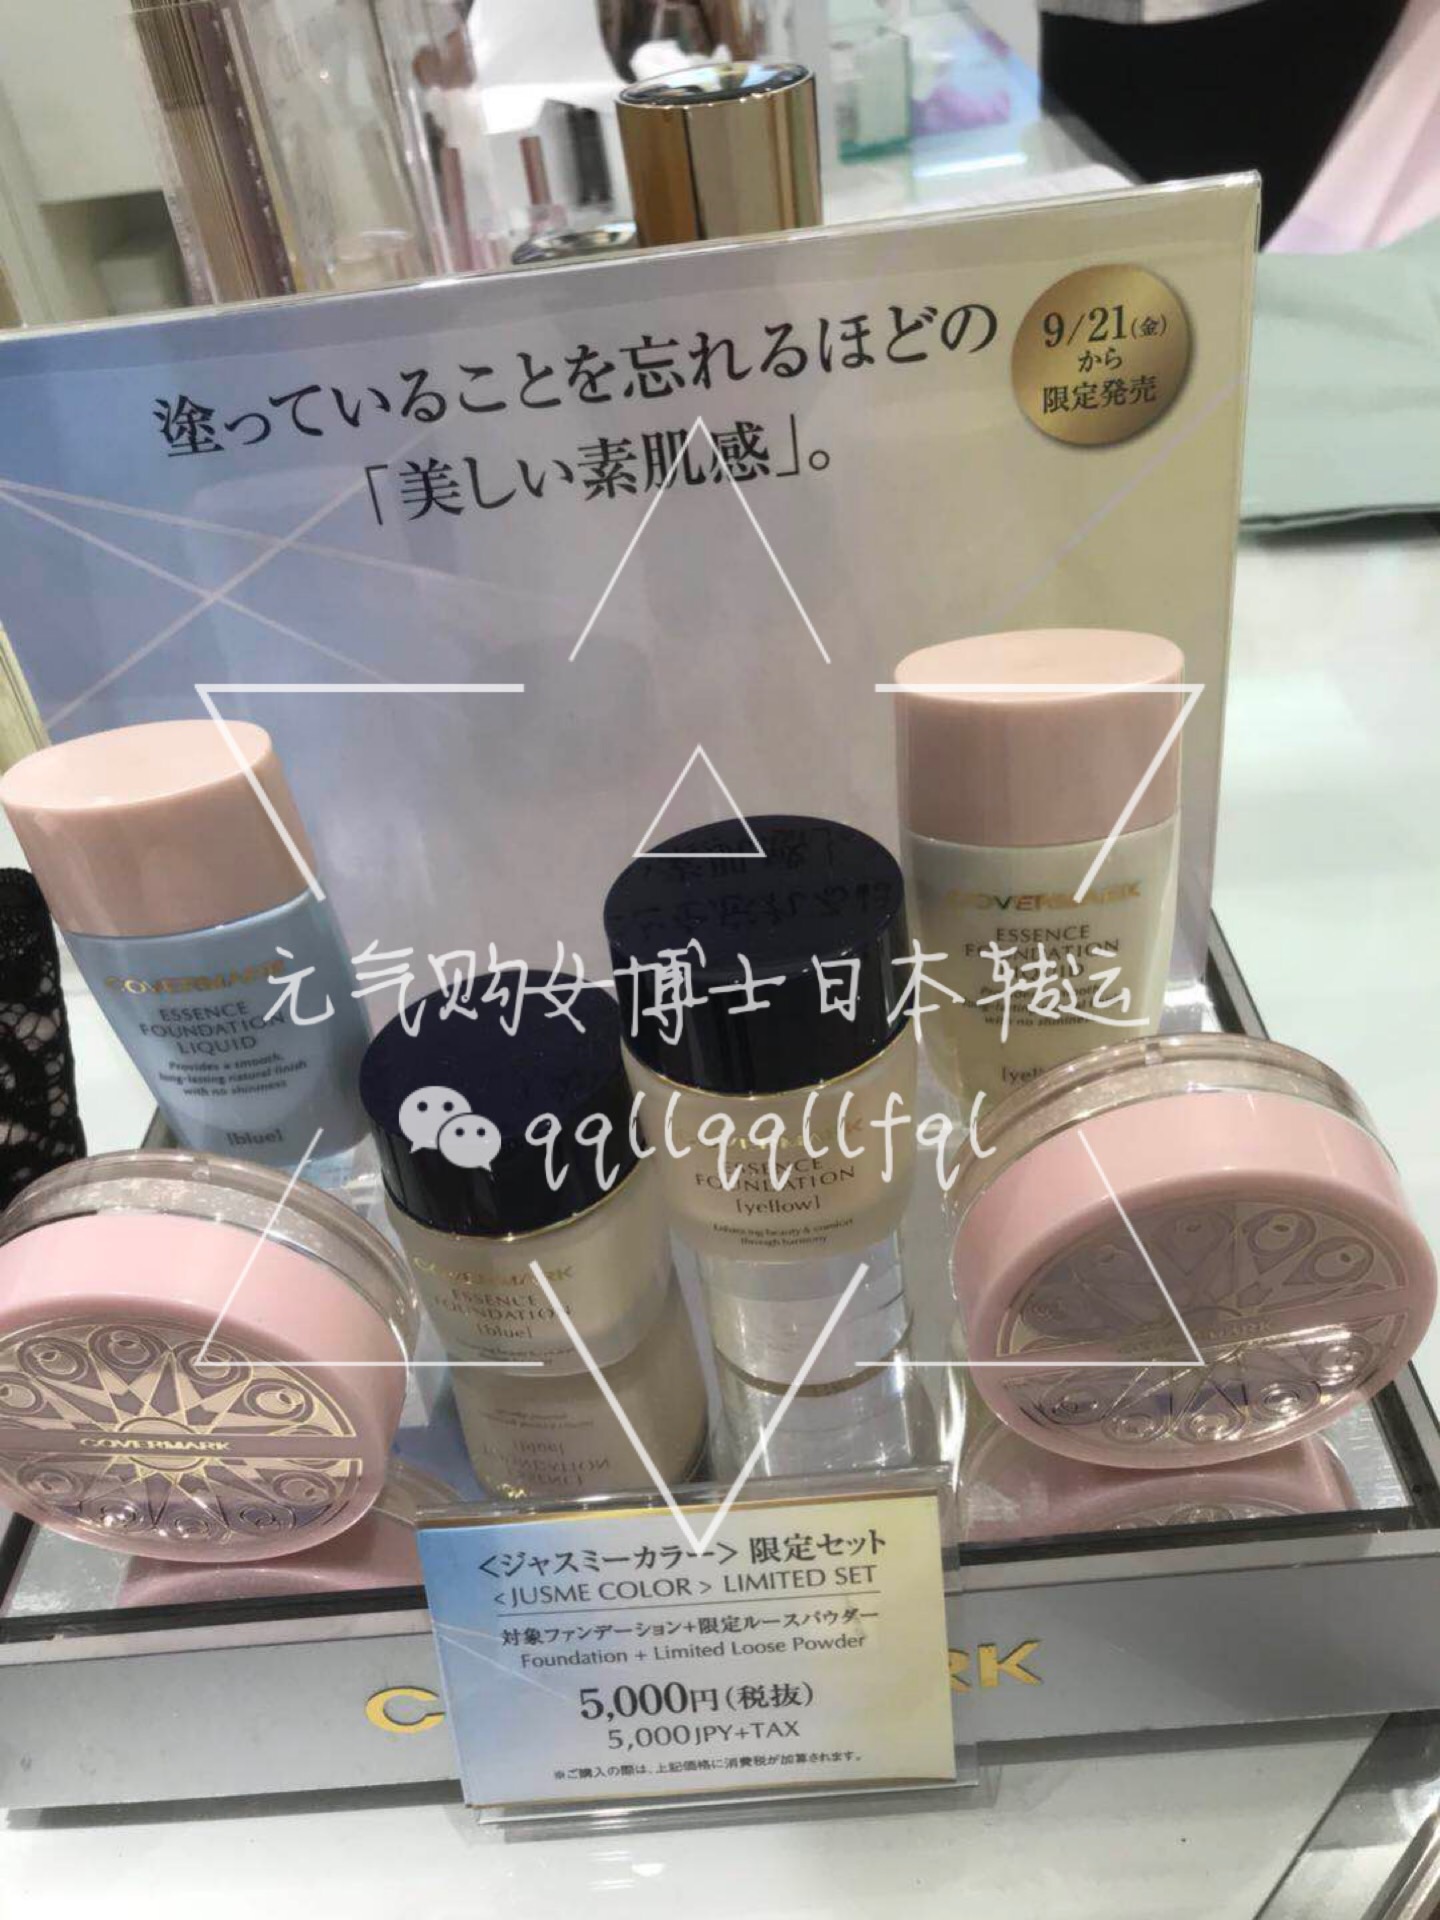 3000円 【53%OFF!】 COVERMARK 化粧水 美容液 2本セット